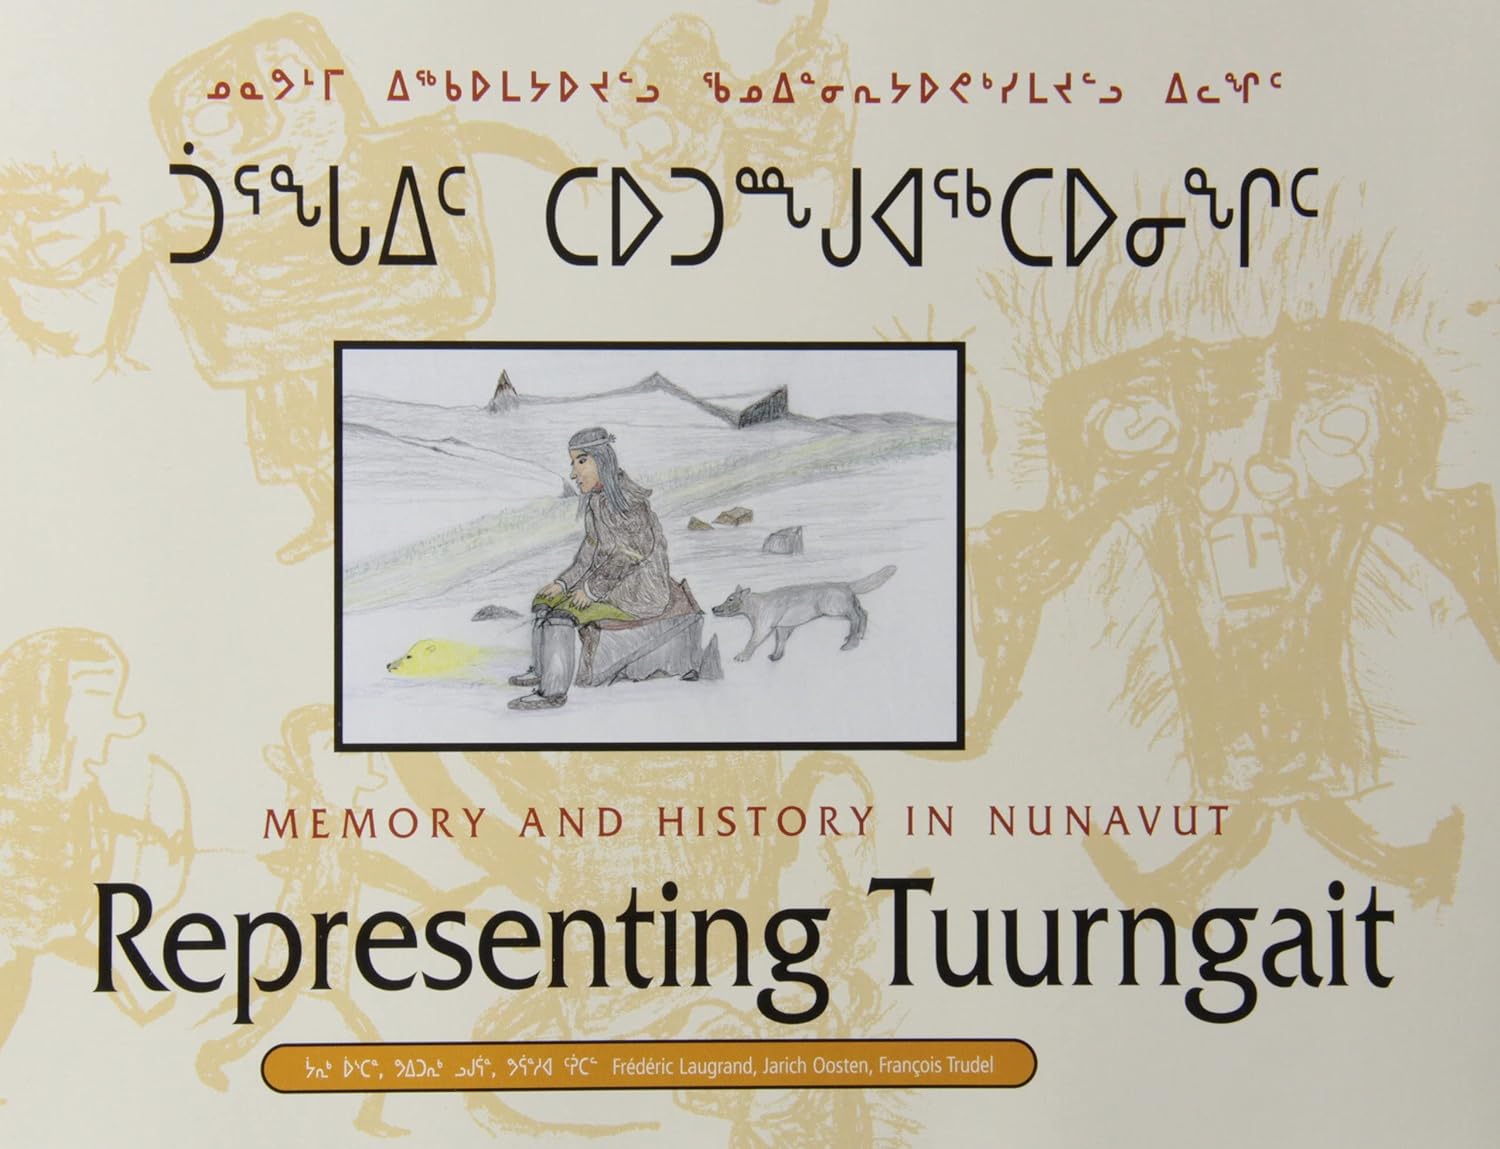 Representing Tuurngait